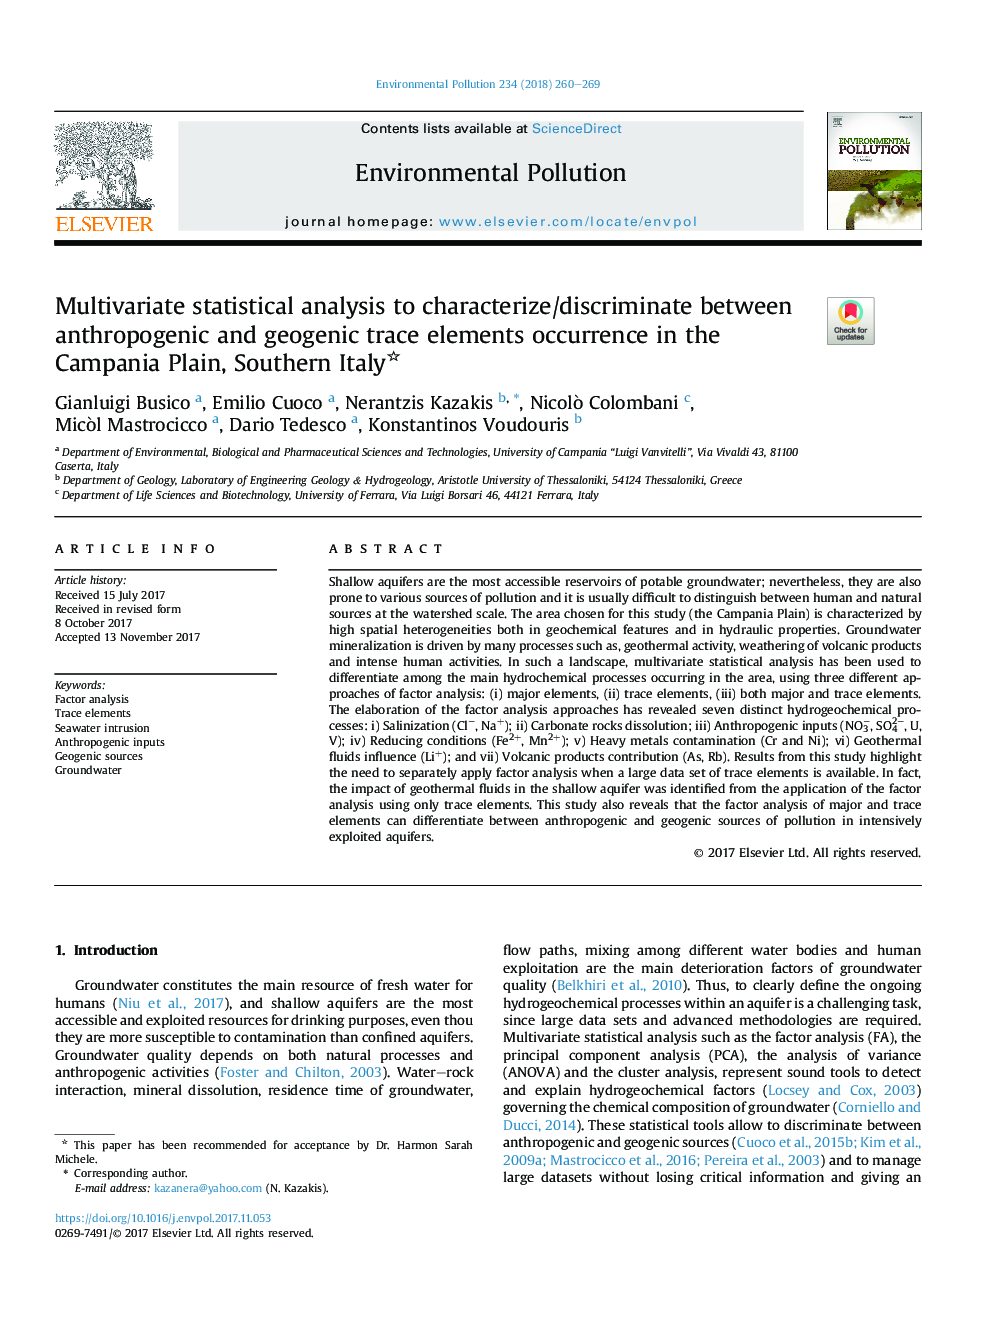 تجزیه و تحلیل آماری چند متغیره برای تشخیص / شناسایی رخداد عناصر کمیاب انسانی و ژئوشیمیایی در دشت کامپانیا، جنوب ایتالیا 